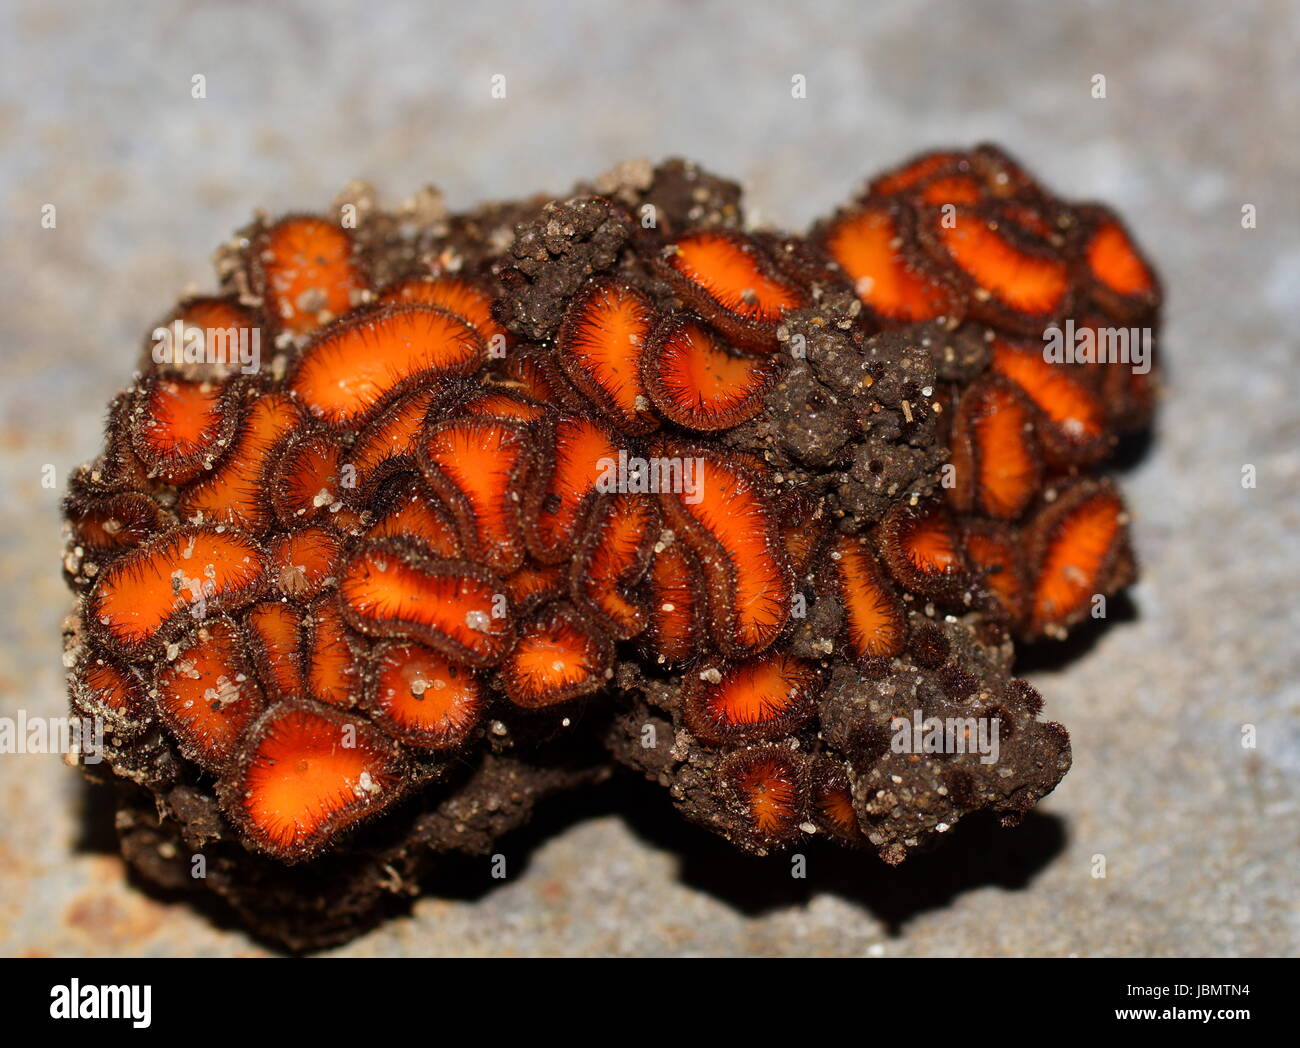 Ascomycota. Ascomycetes. Scutellinia sp. The group of Ascomycetes grows on the ground. Stock Photo